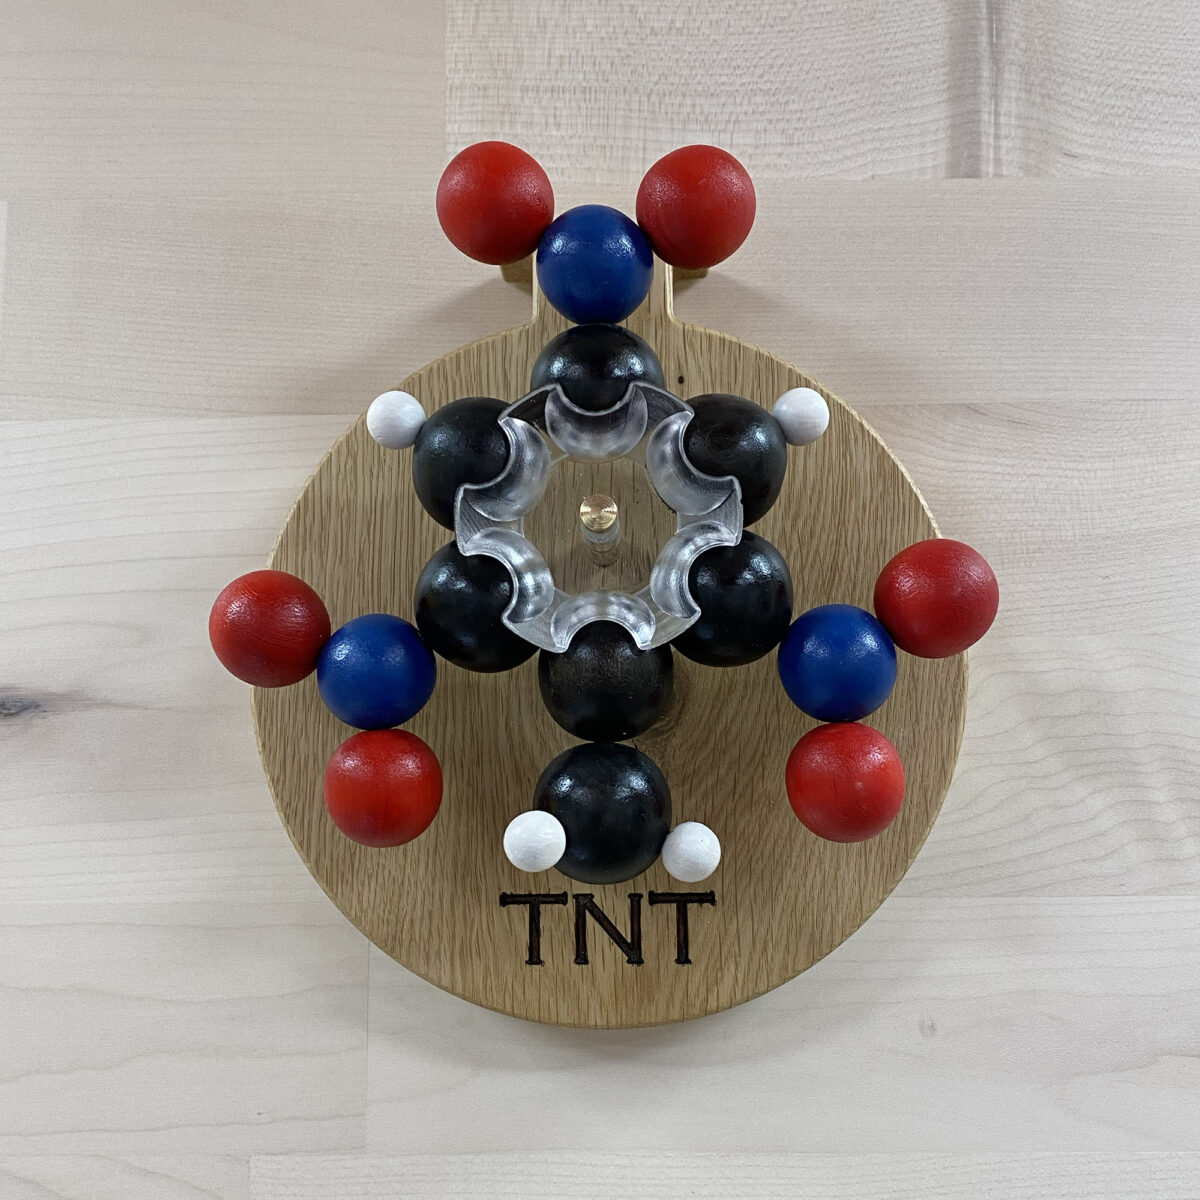 TNT Molecule Model